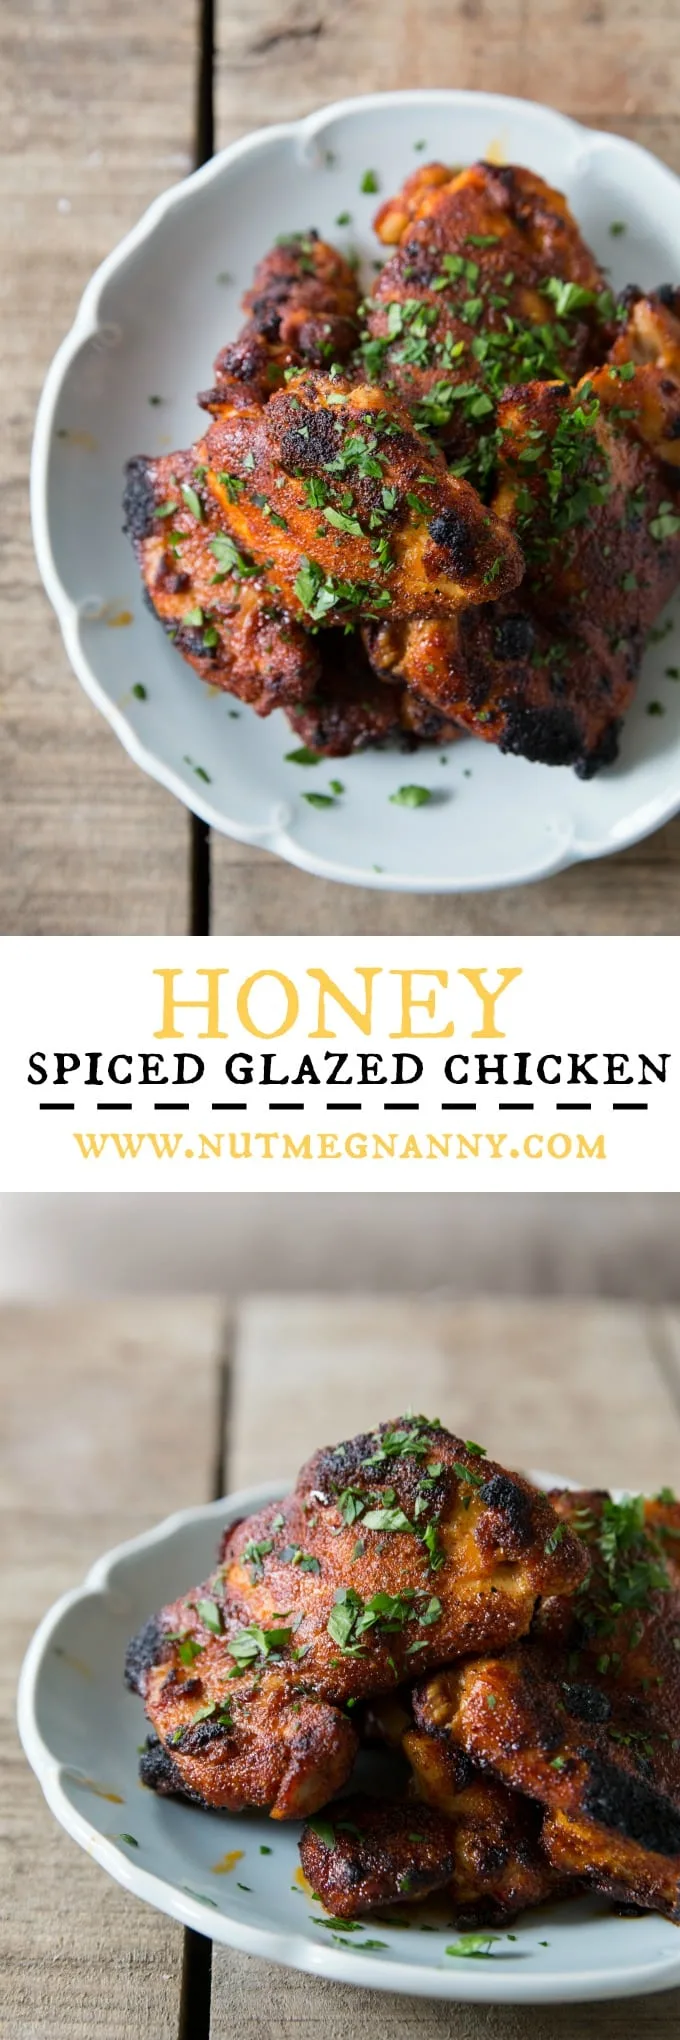 Honey spiced glazed chicken pin for pinterest.